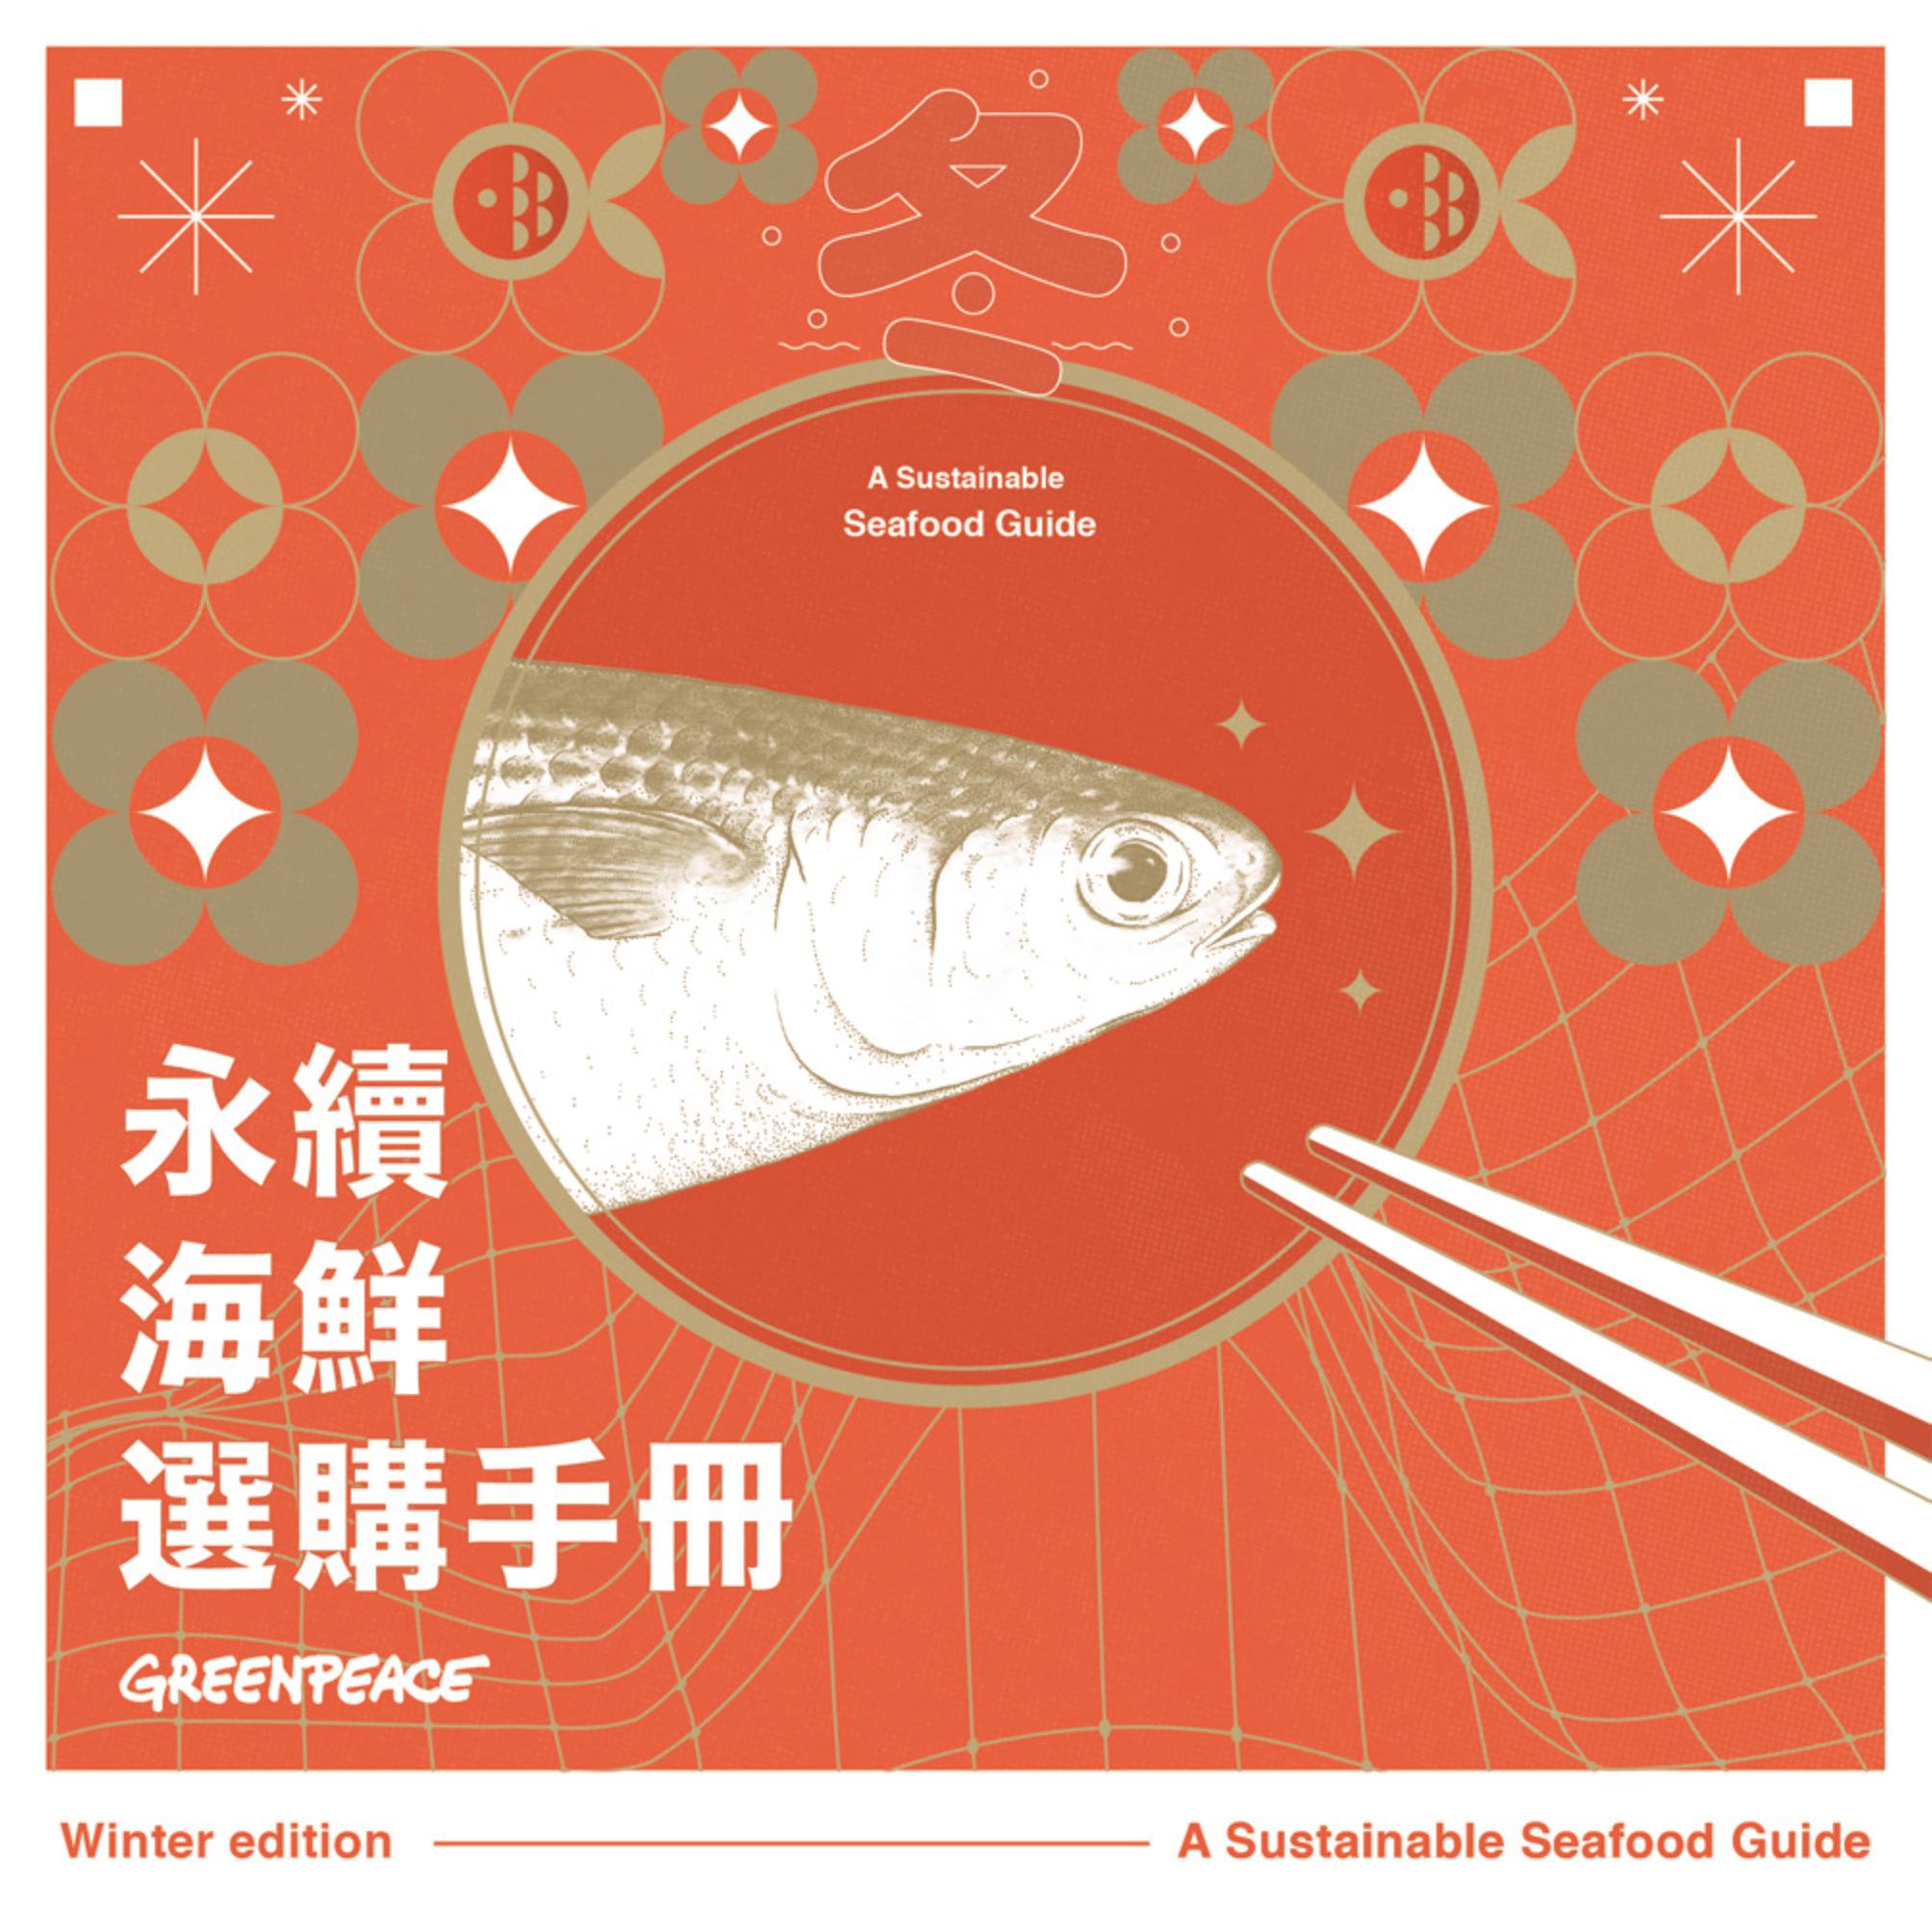 年關將至，綠色和平與臺灣永續鱻魚發展協會合作推出「永續海鮮選購手冊」，鼓勵消費者了解餐桌上的魚從何而來，在日常飲食中不僅兼顧美味，又守護海洋。